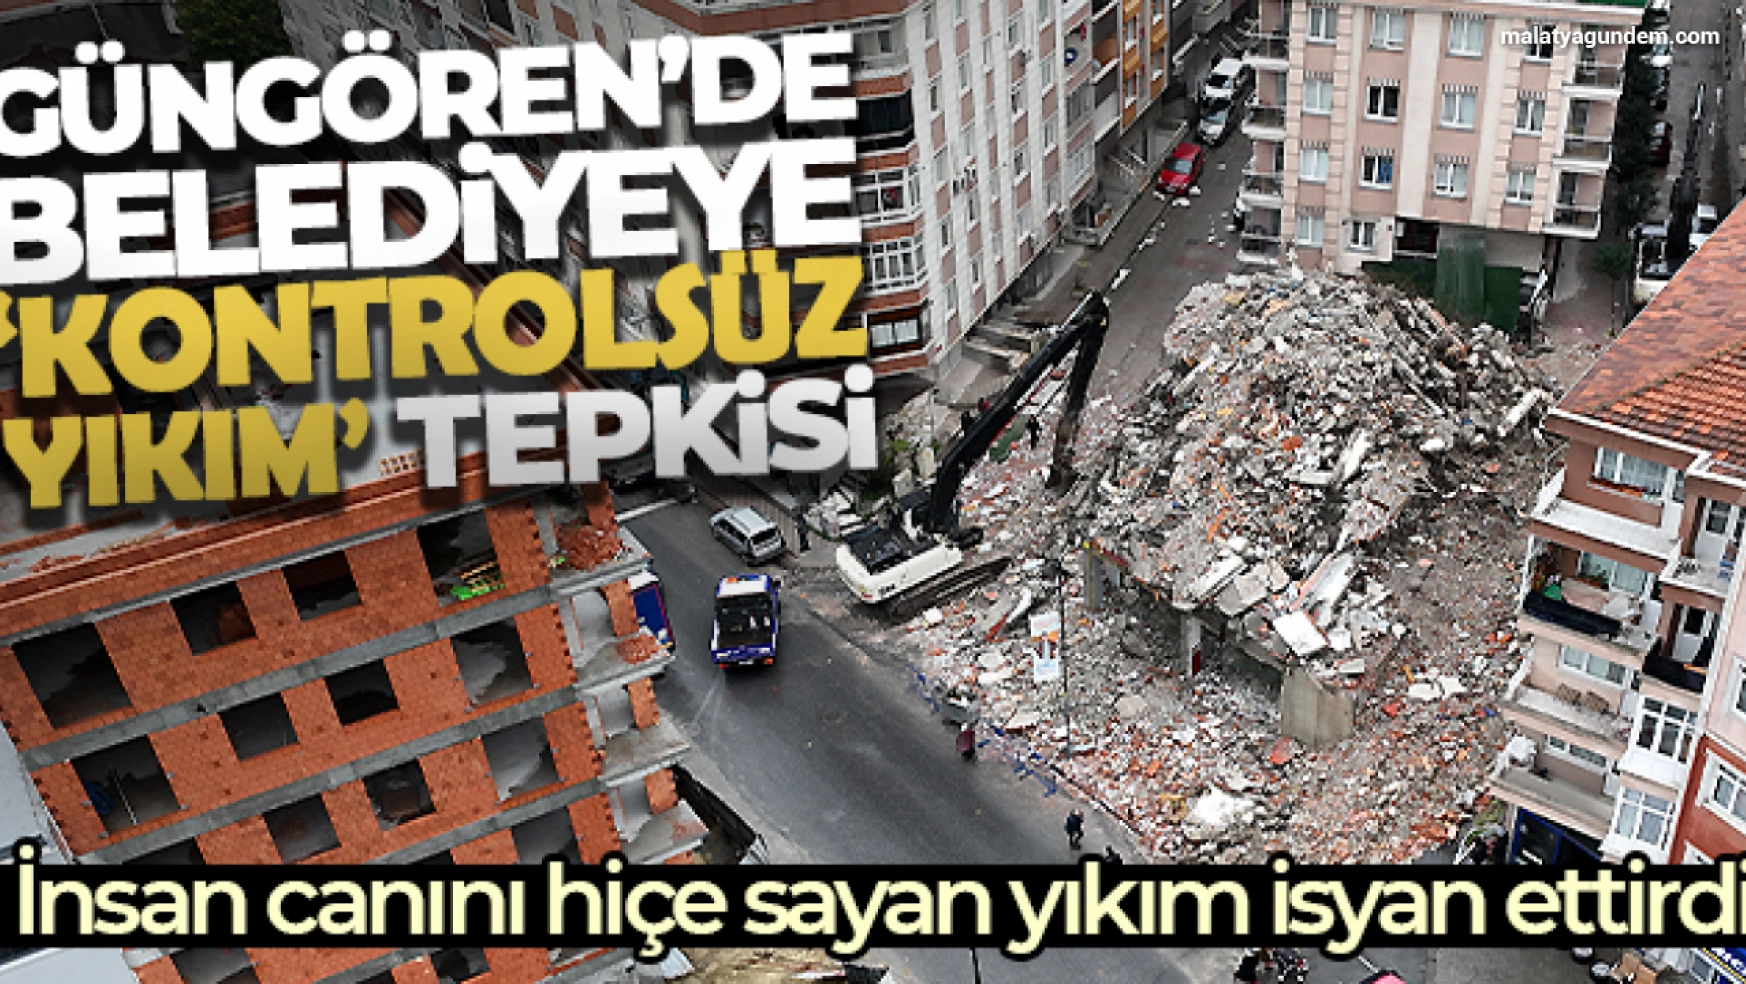 Güngören'de belediyeye 'kontrolsüz yıkım' tepkisi